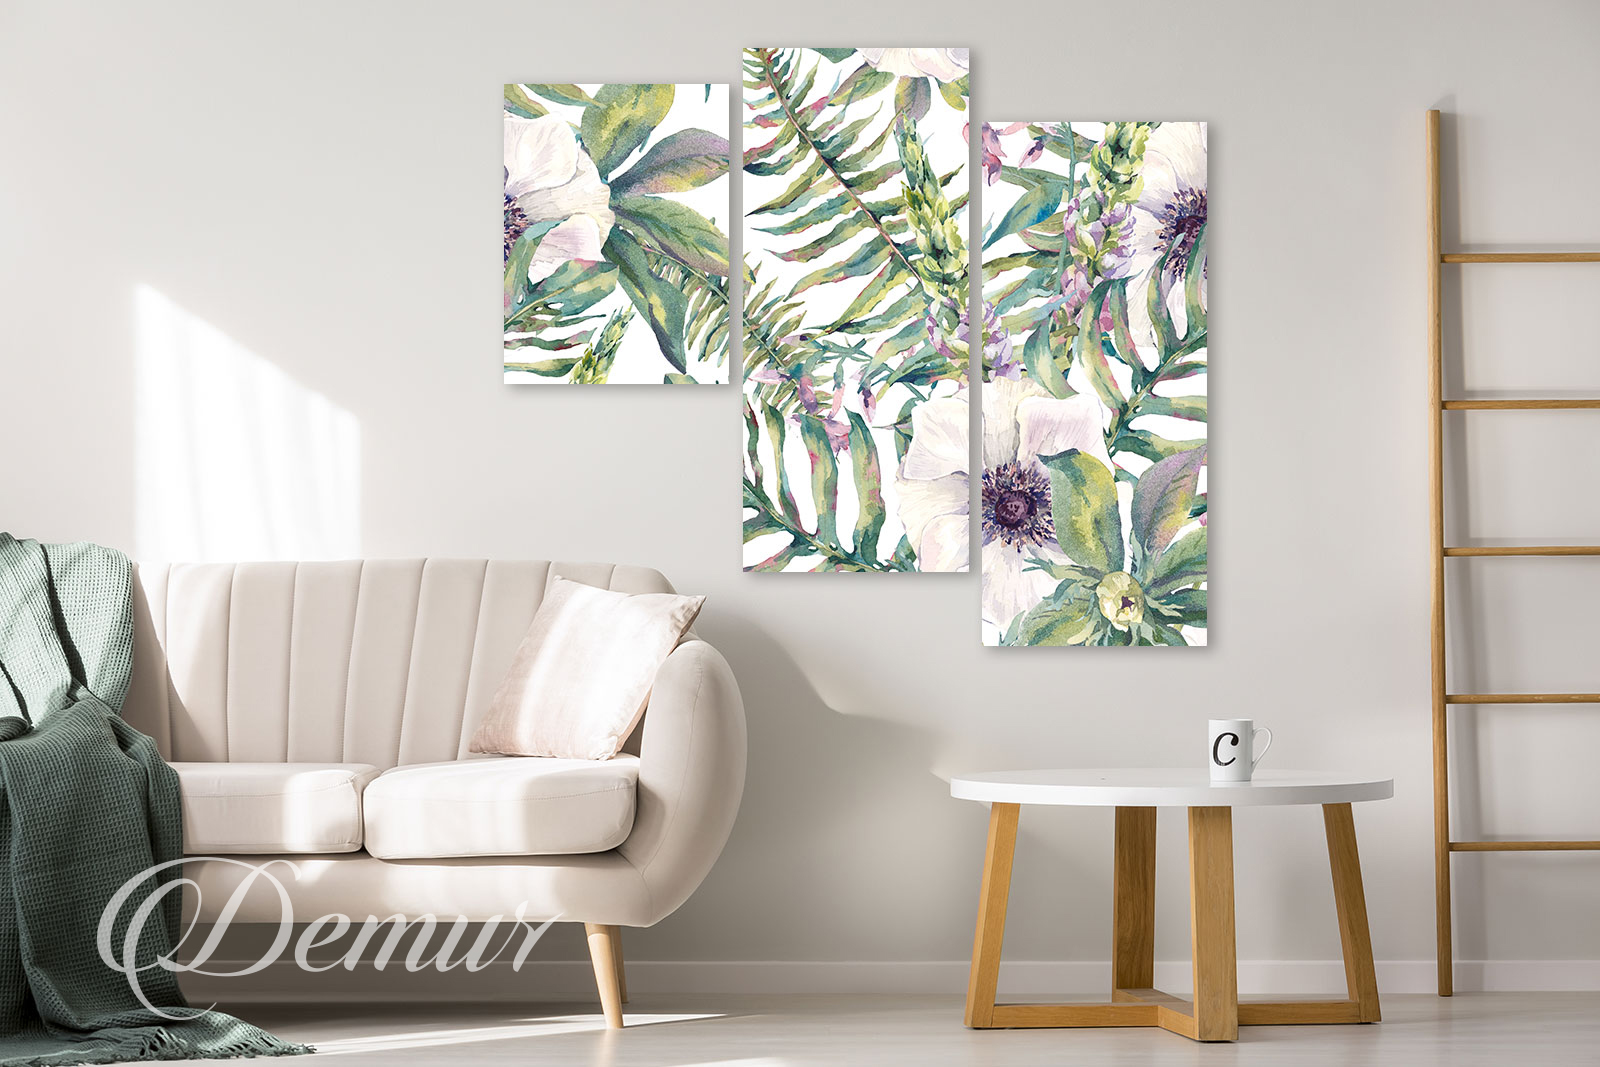 Obraz kwiaty - Pomysł na ścianę w salonie